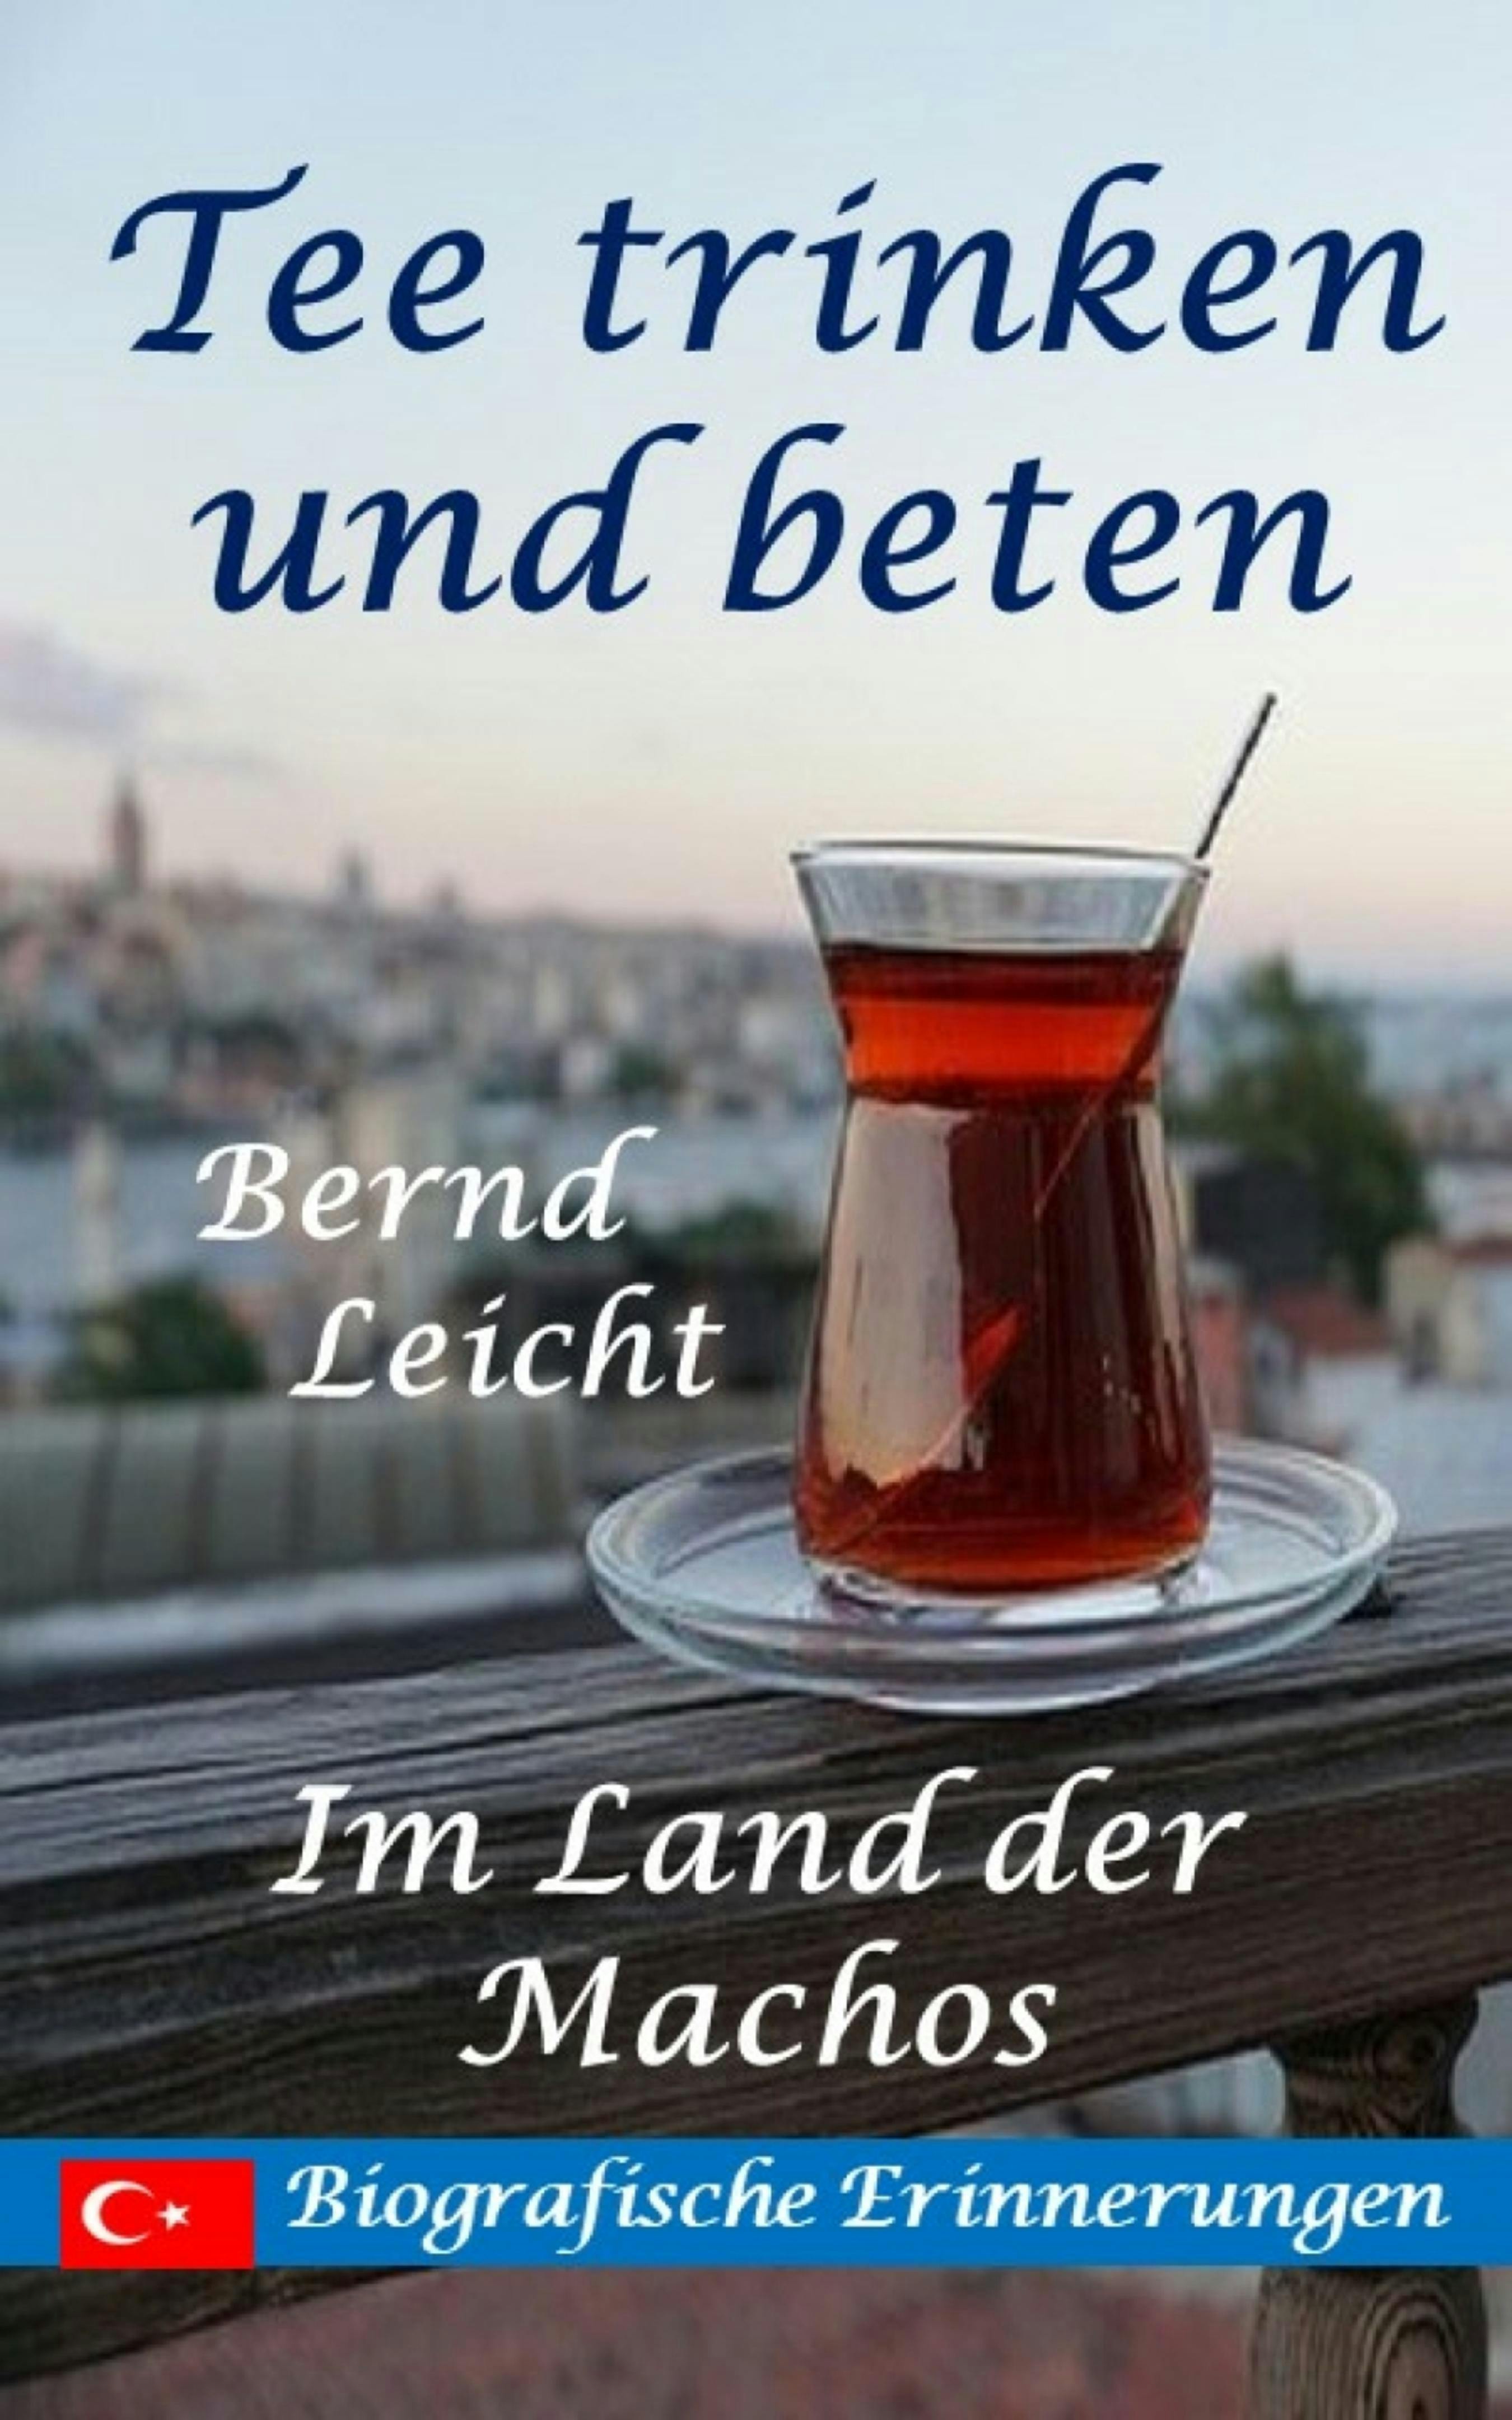 Tee trinken und beten: Im Land der Machos - Bernd Leicht